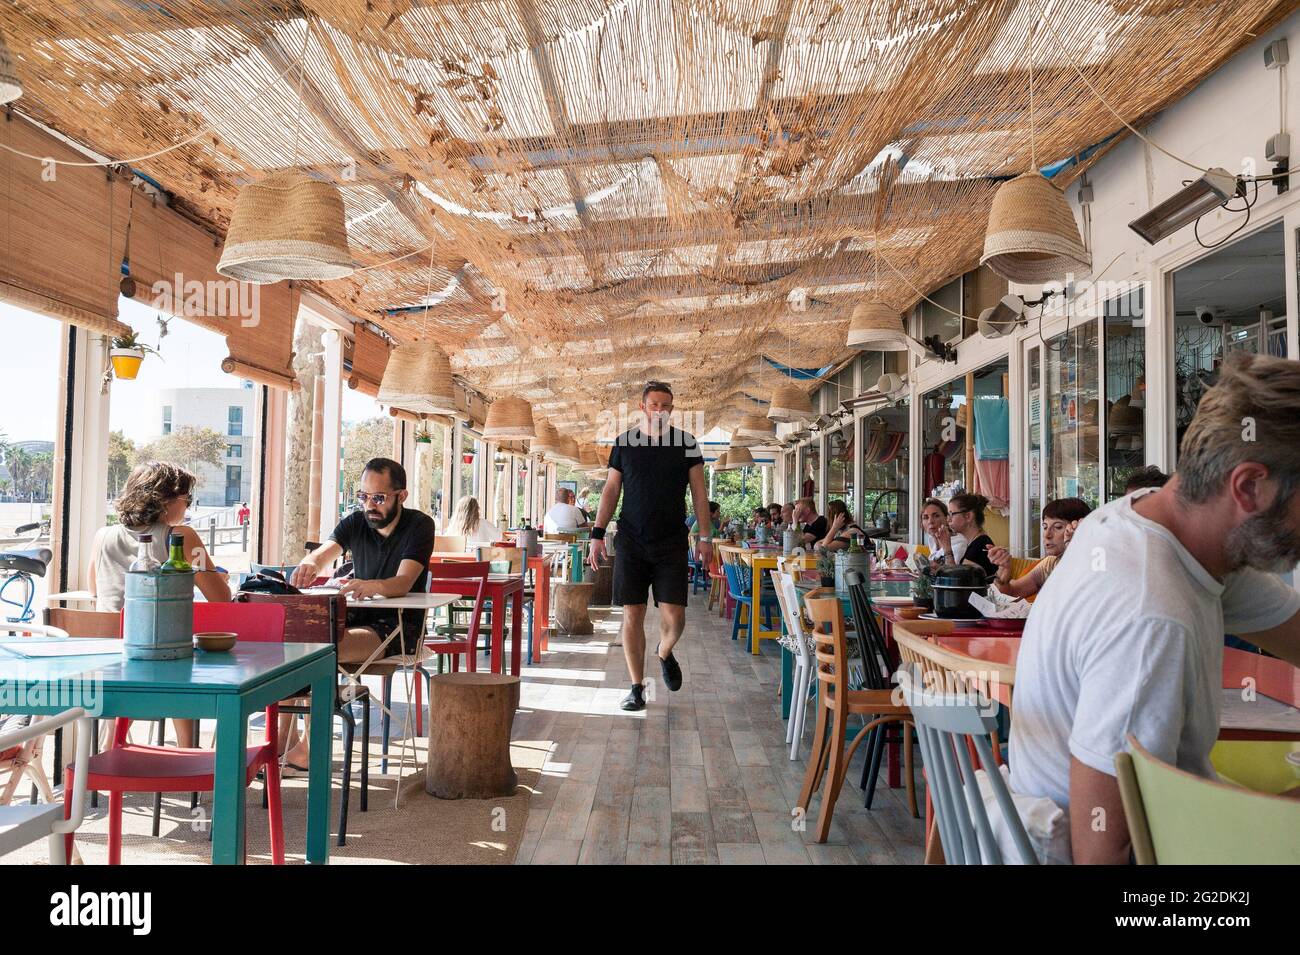 Un homme revient à sa table dans un restaurant espagnol lumineux et ensoleillé sur la plage de Barcelone, au bord de la mer Banque D'Images